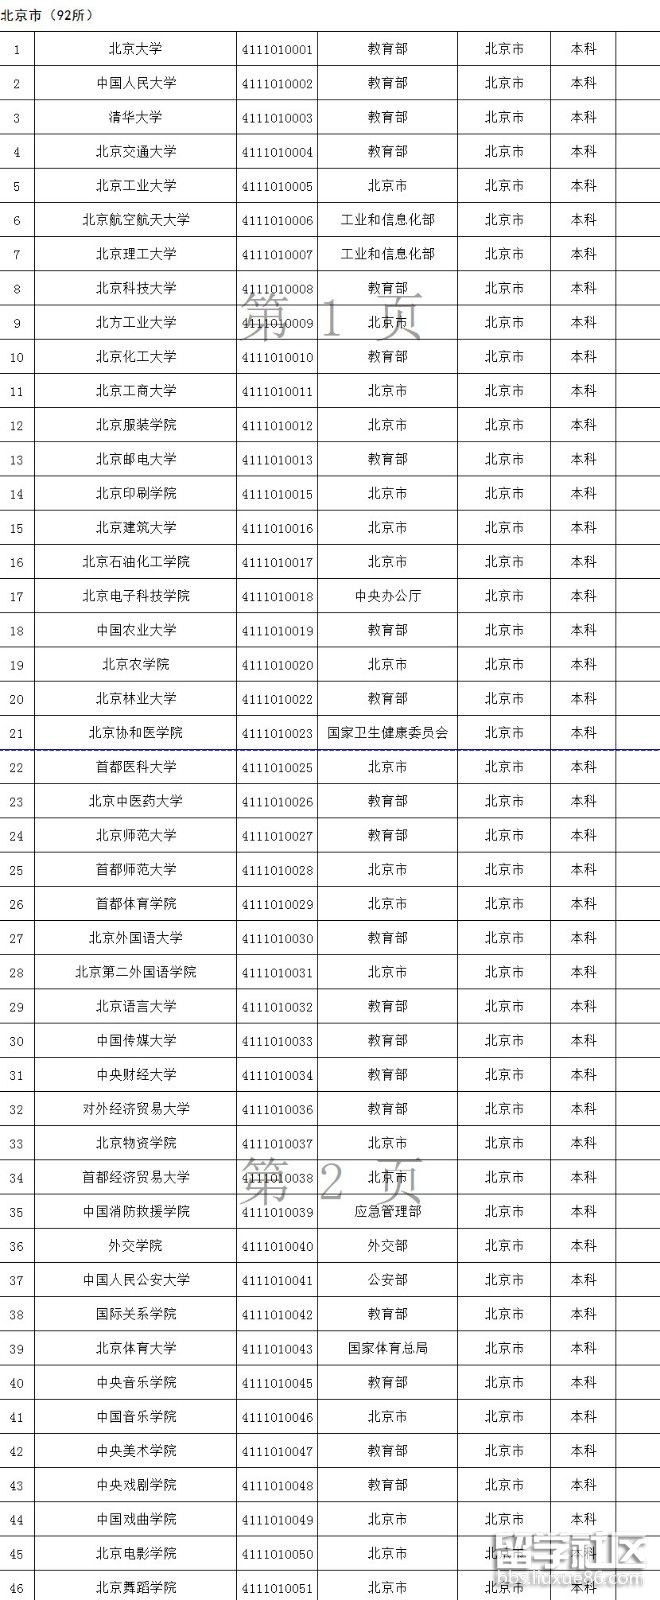 北京高校名单1